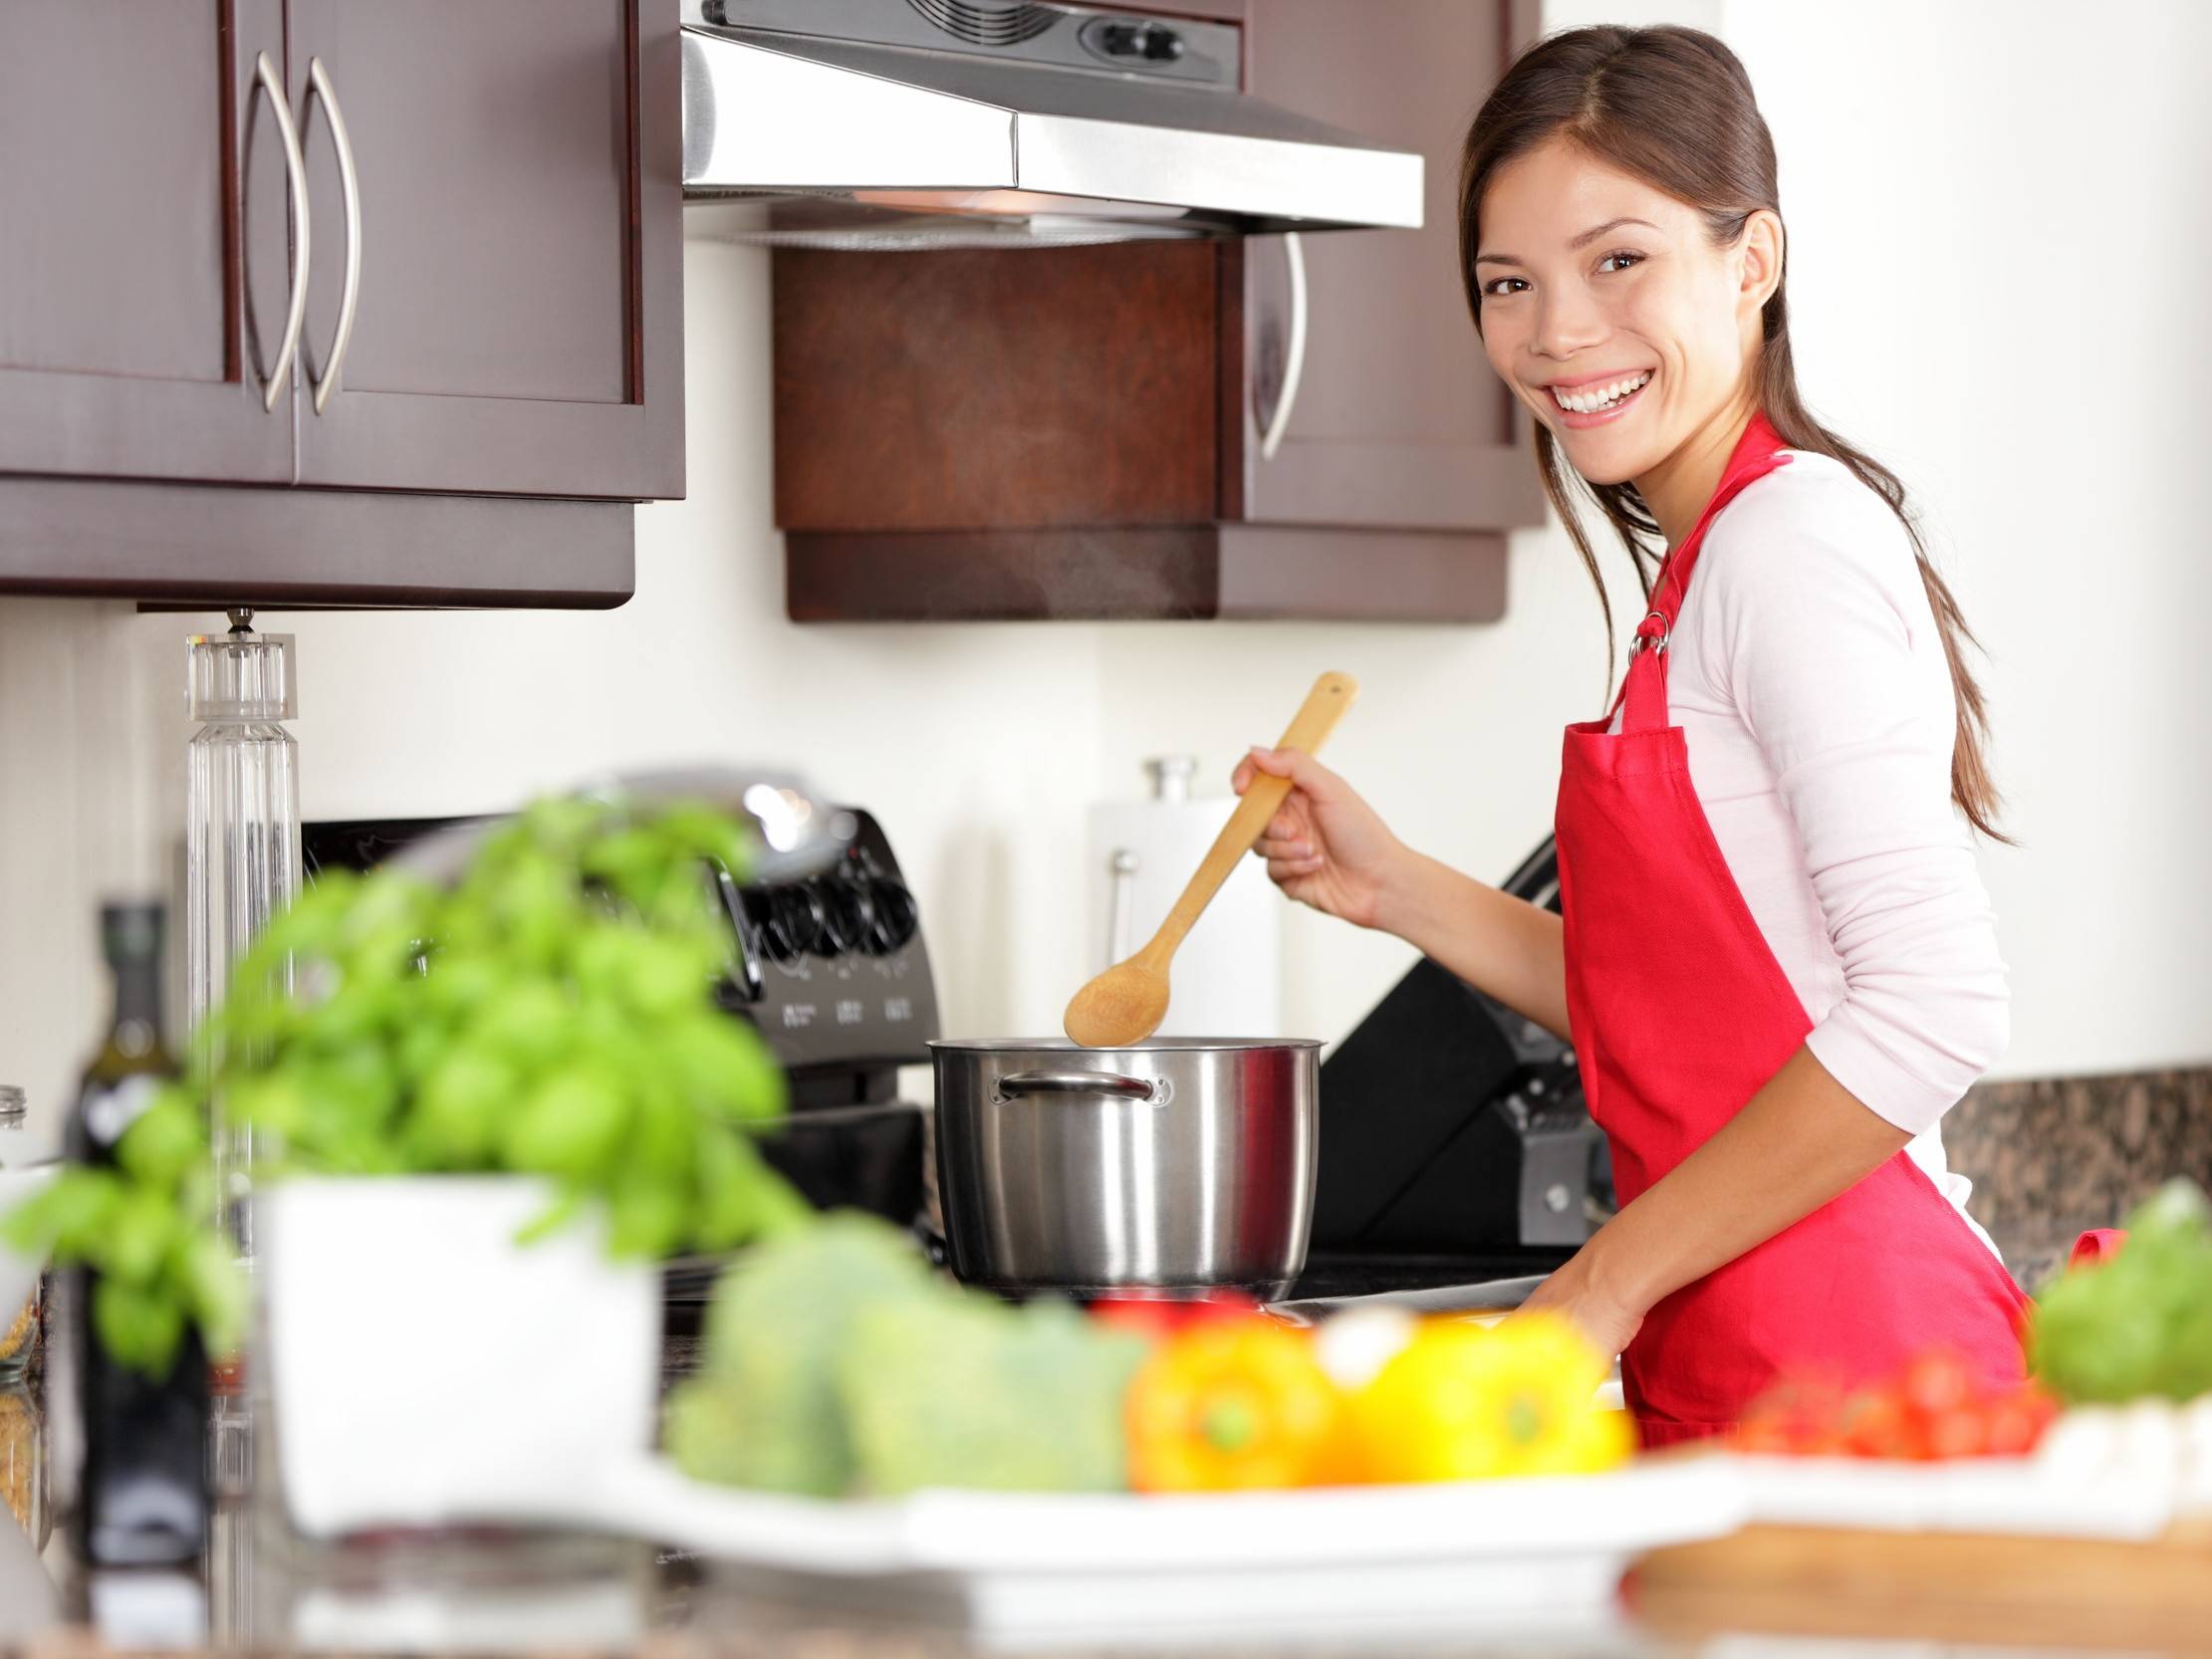 Тайм-менеджмент на кухне: советы, которые облегчат вашу готовку и жизнь